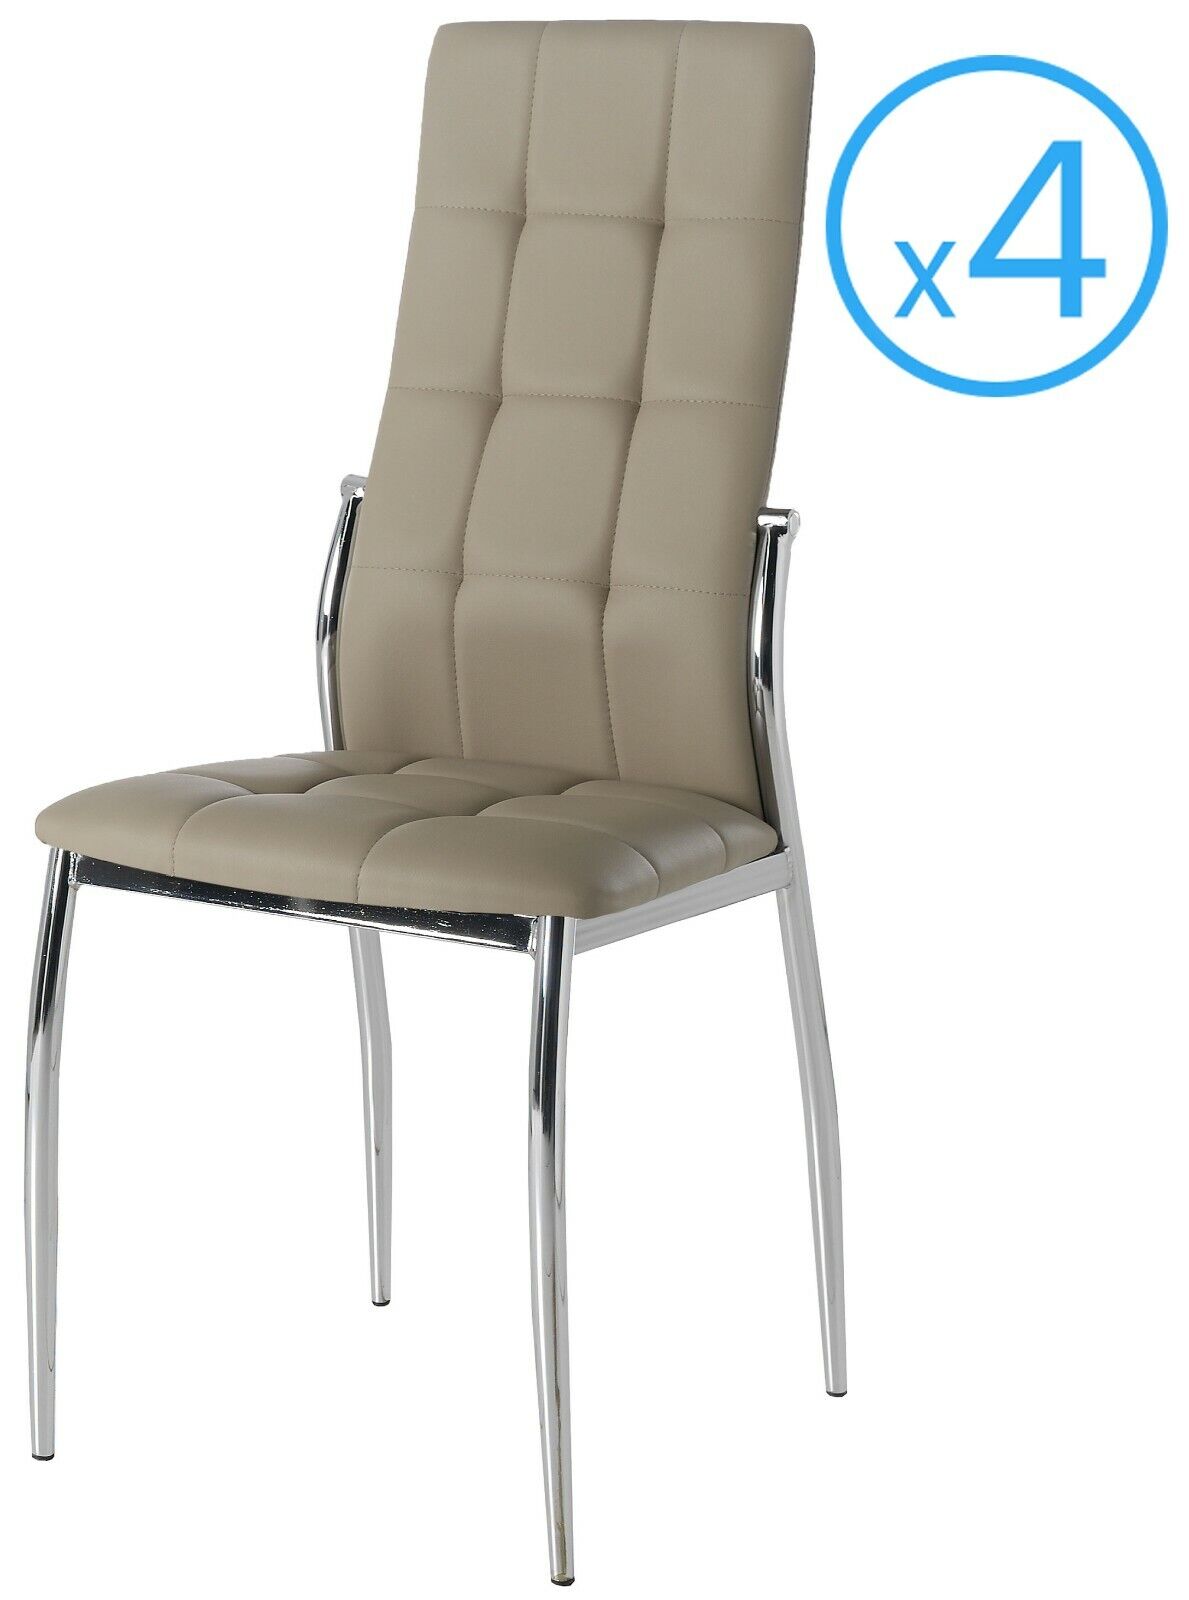 Pack 4 sillas Laci estilo moderno capuchino polipiel salon comedor 101x51x45